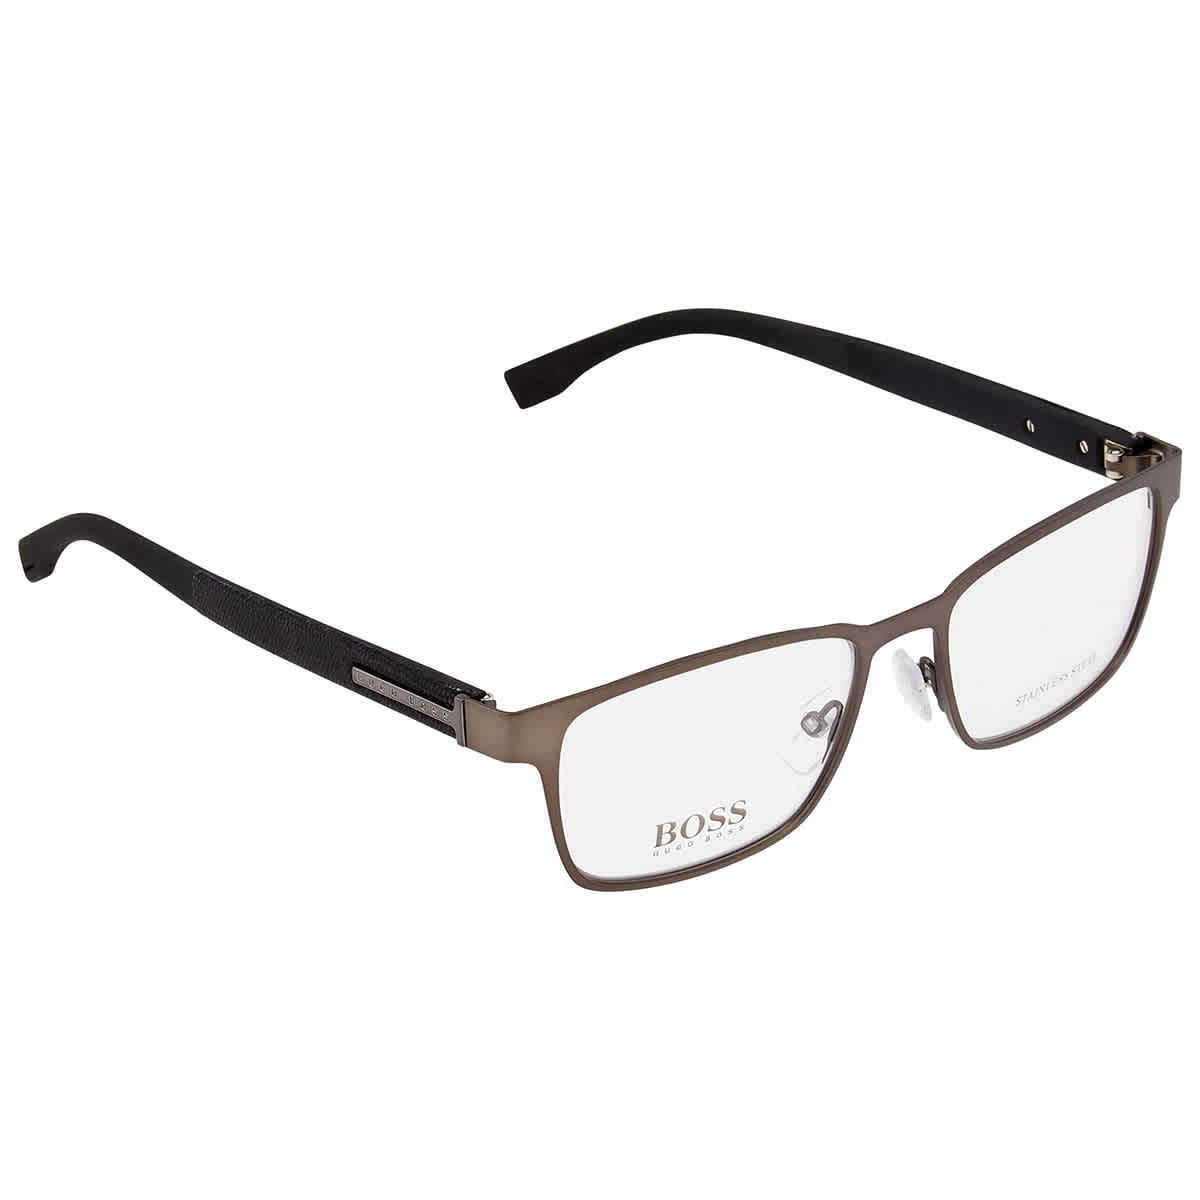 Hugo Boss Men's Black Round Eyeglass Frames 986 05MO 53 - Walmart.com